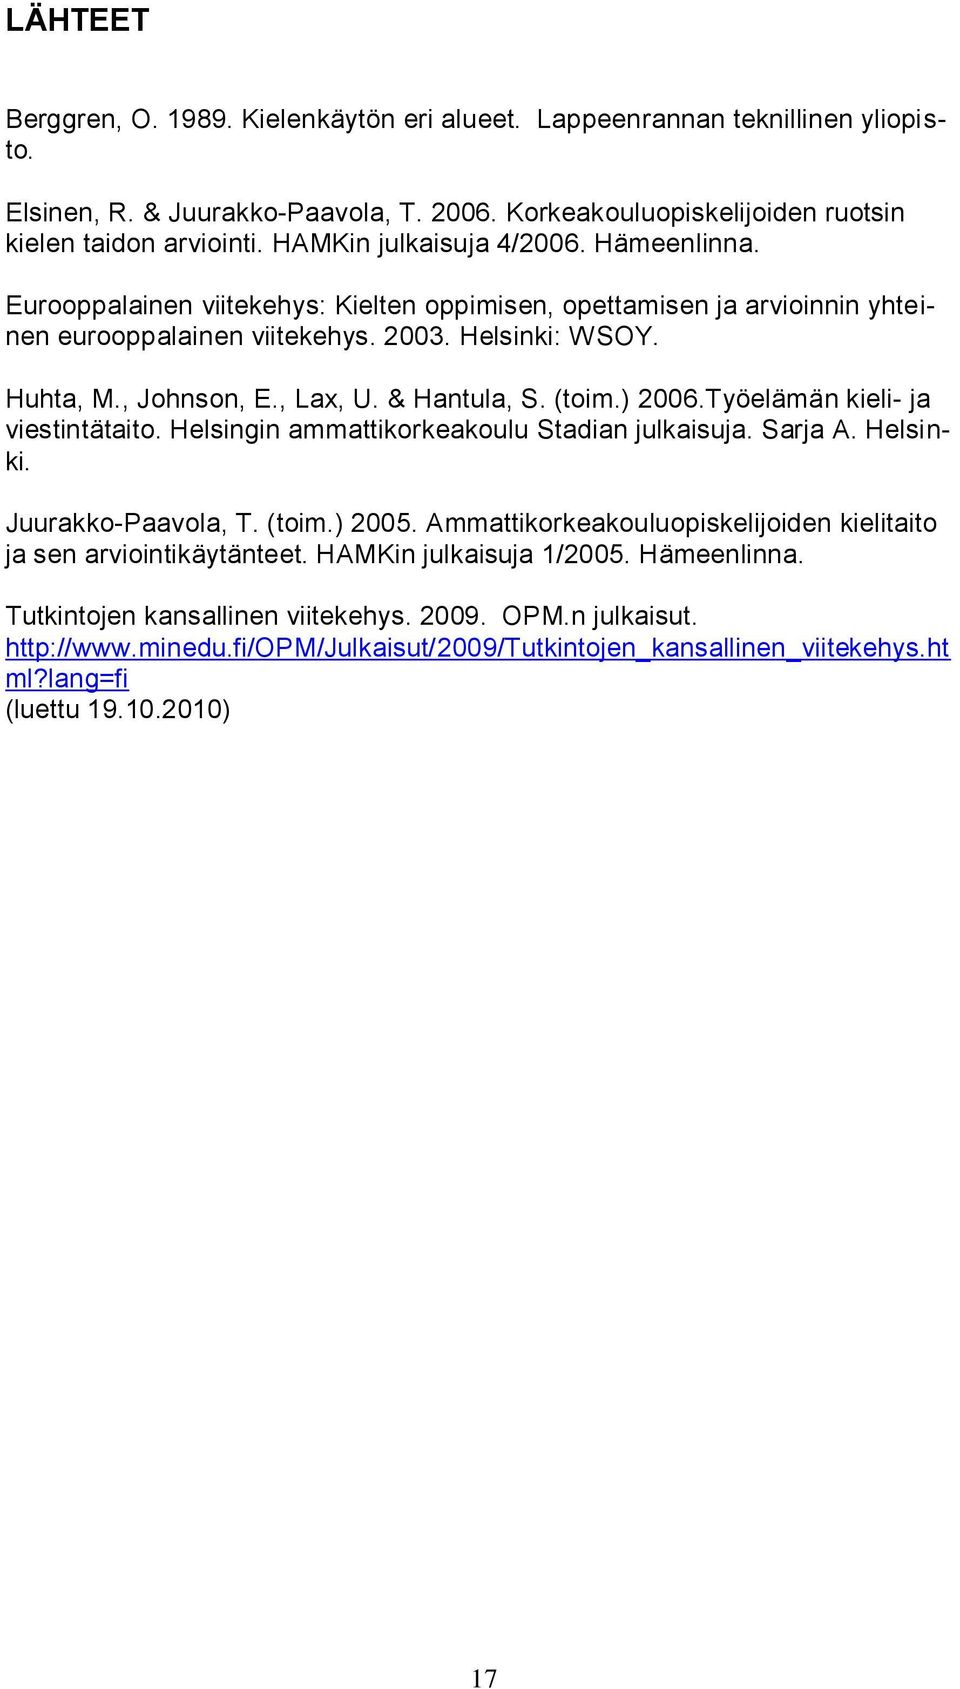 & Hantula, S. (toim.) 2006.Työelämän kieli- ja viestintätaito. Helsingin ammattikorkeakoulu Stadian julkaisuja. Sarja A. Helsinki. Juurakko-Paavola, T. (toim.) 2005.